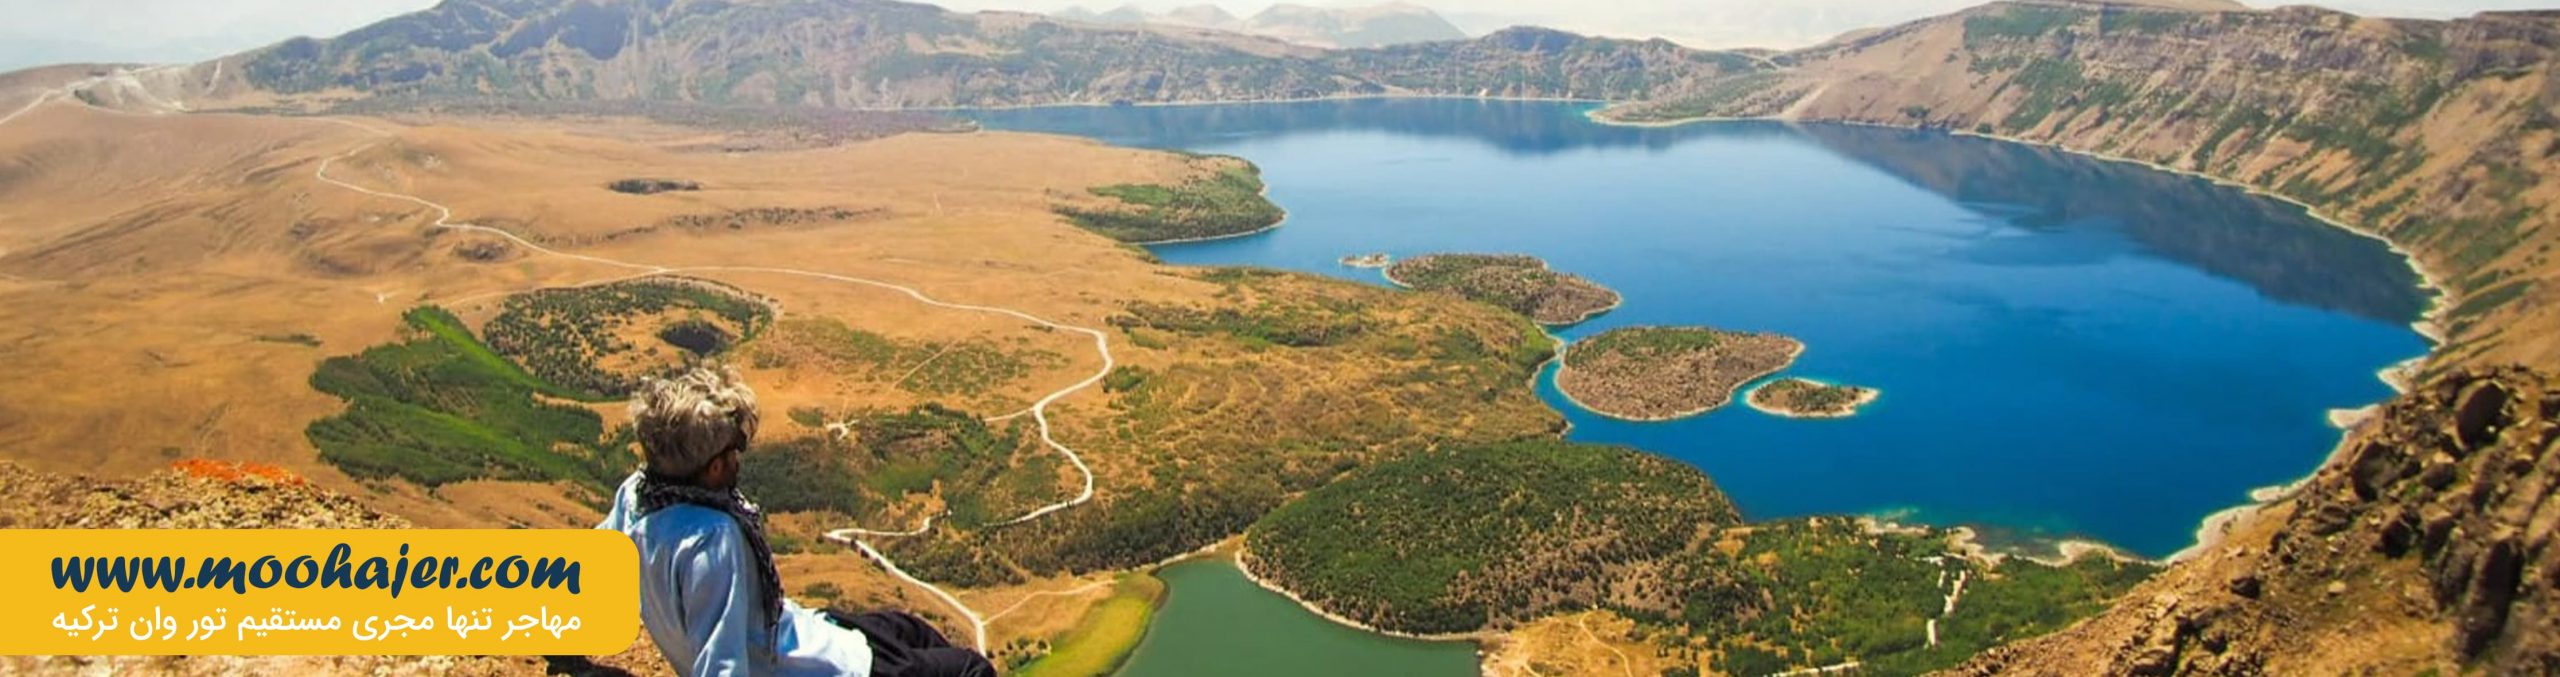 دریاچه آتشفشانی نمرود | Nemrut Gölü